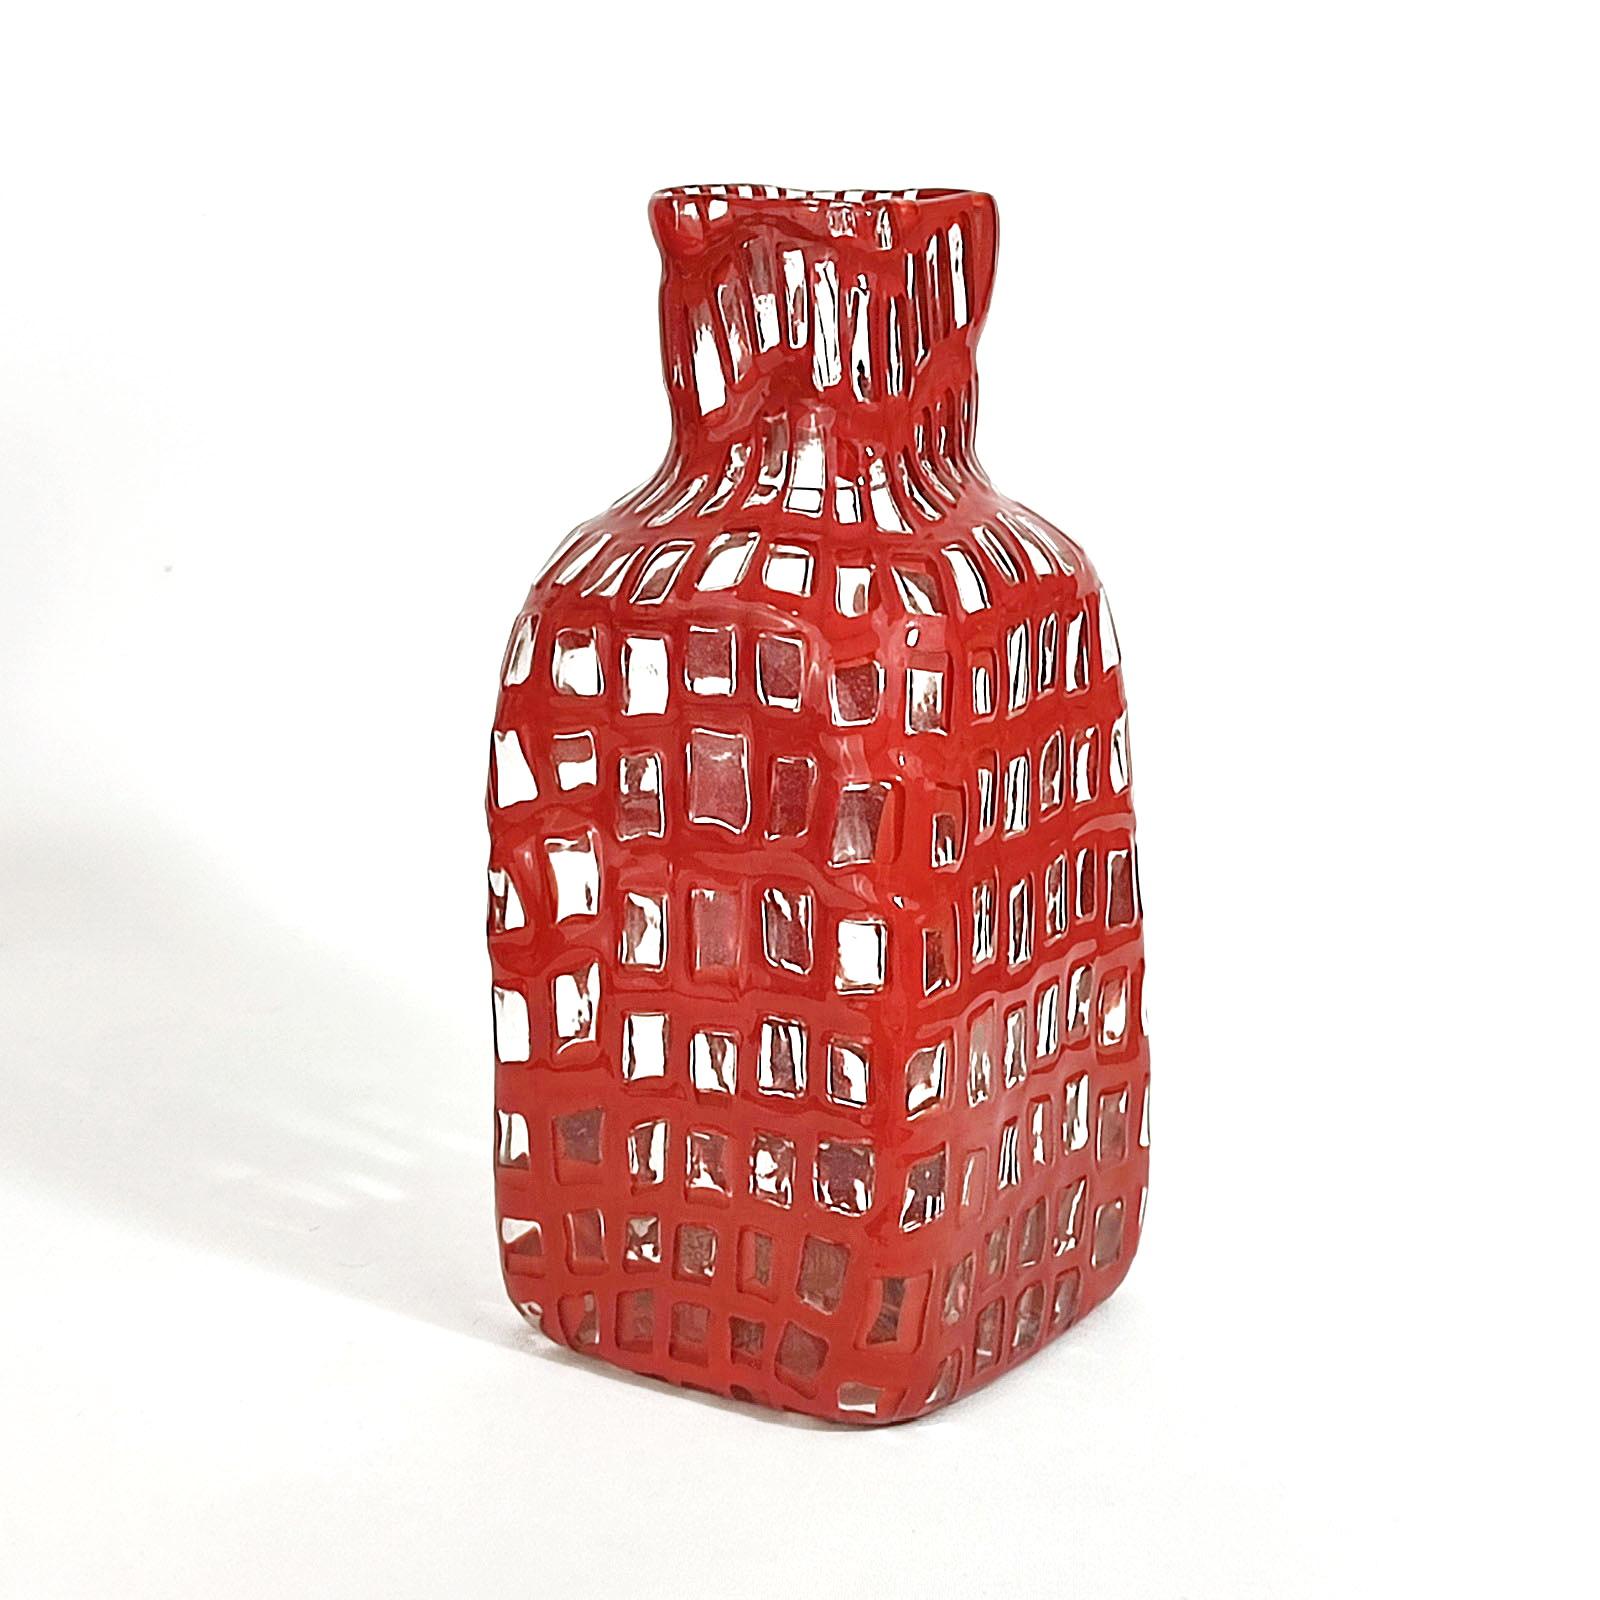 Tobia Scarpa 'Occhi' Flasche, Venini, Italien, 1960er Jahre.
Farbloses Glas, rot umrandete Murine, schachbrettartig angeordnet und verschmolzen. Viereckige Form, an den Ecken abgerundet, quadratischer Hals. In ausgezeichnetem Zustand.
Gezeichnet: